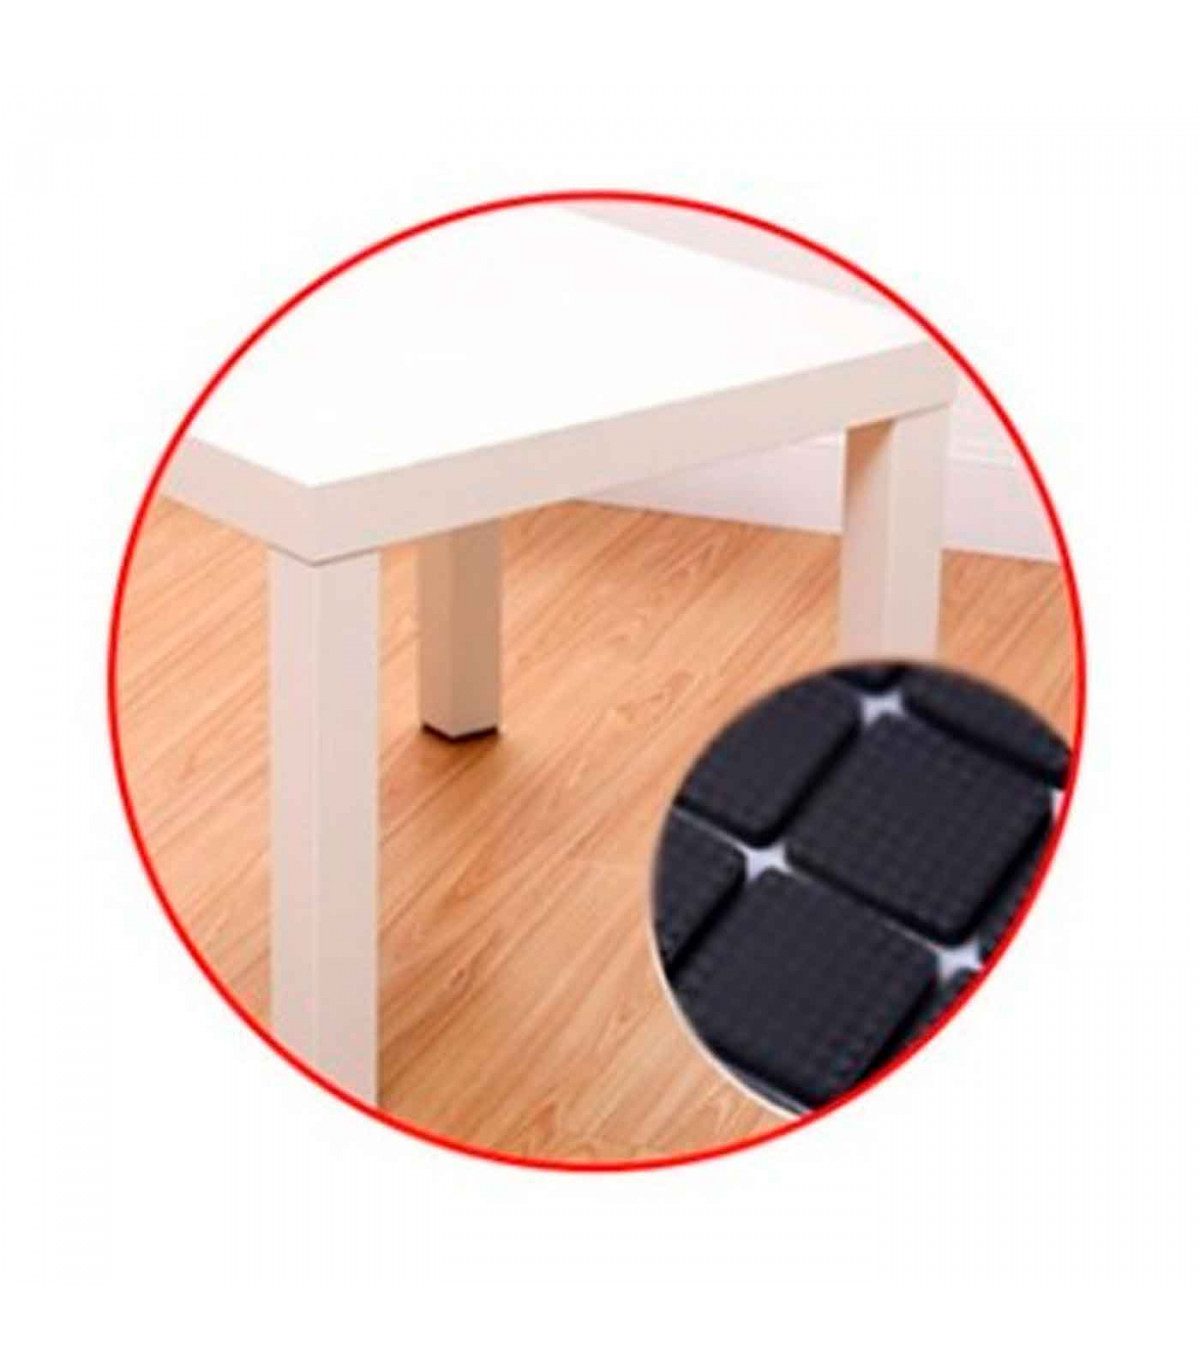 Protectores cuadrados para patas de sillas, mesas o muebles. 8 fieltros  adhesivos. Protector adhesivo para patas de muebles, fie